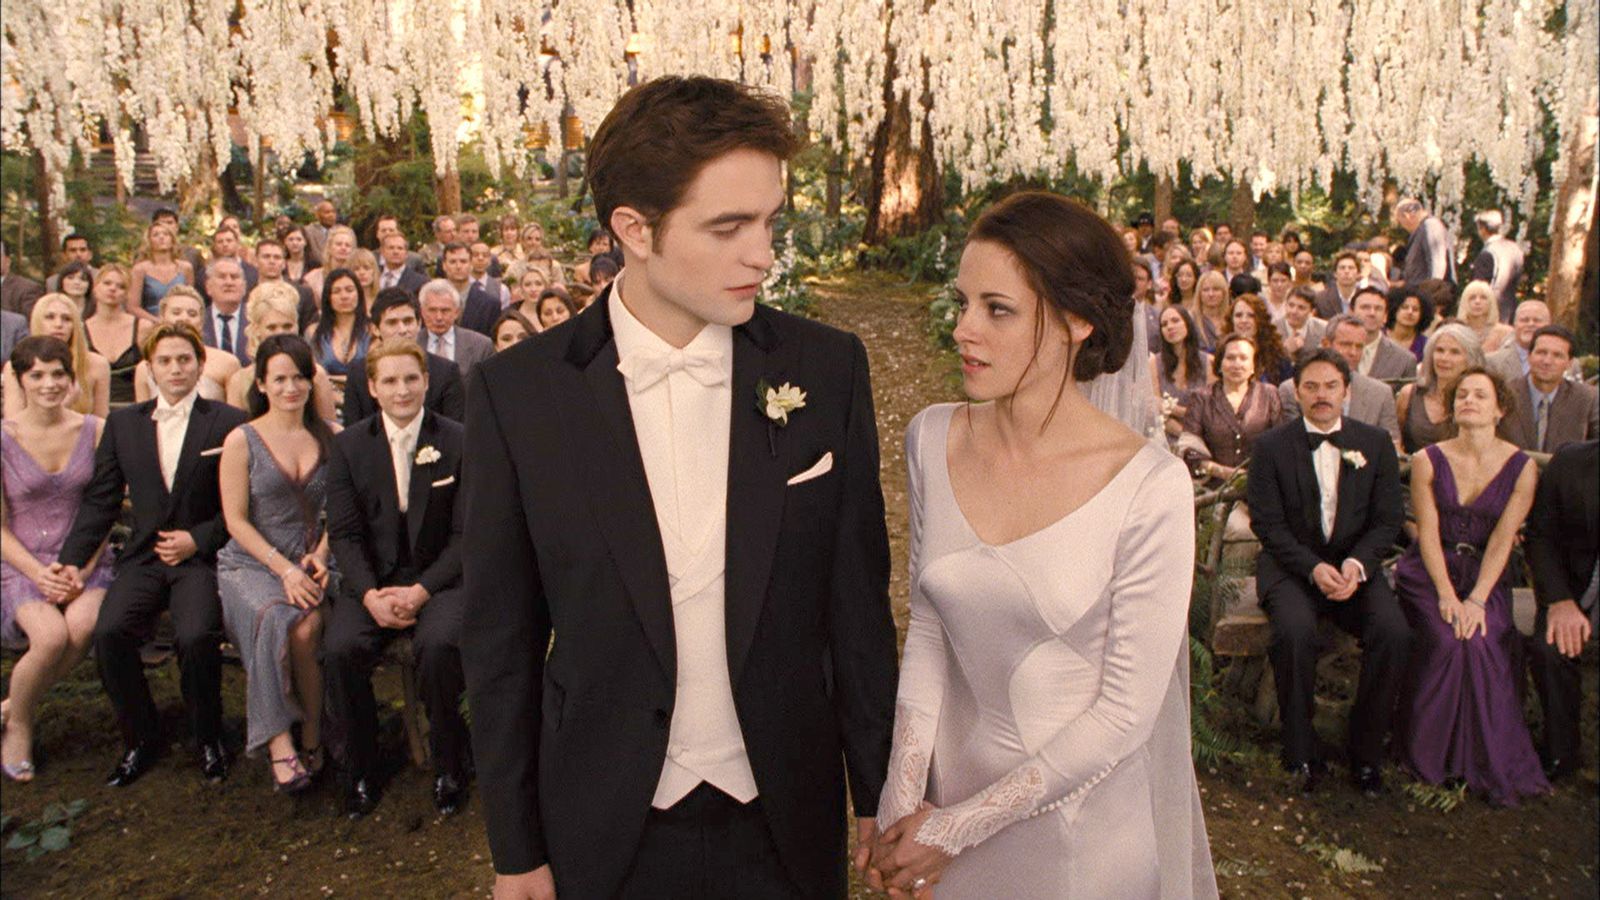 breaking dawn wedding. #myweddingwilllooklikethis. Bella and edward wedding, Twilight wedding, Breaking dawn wedding